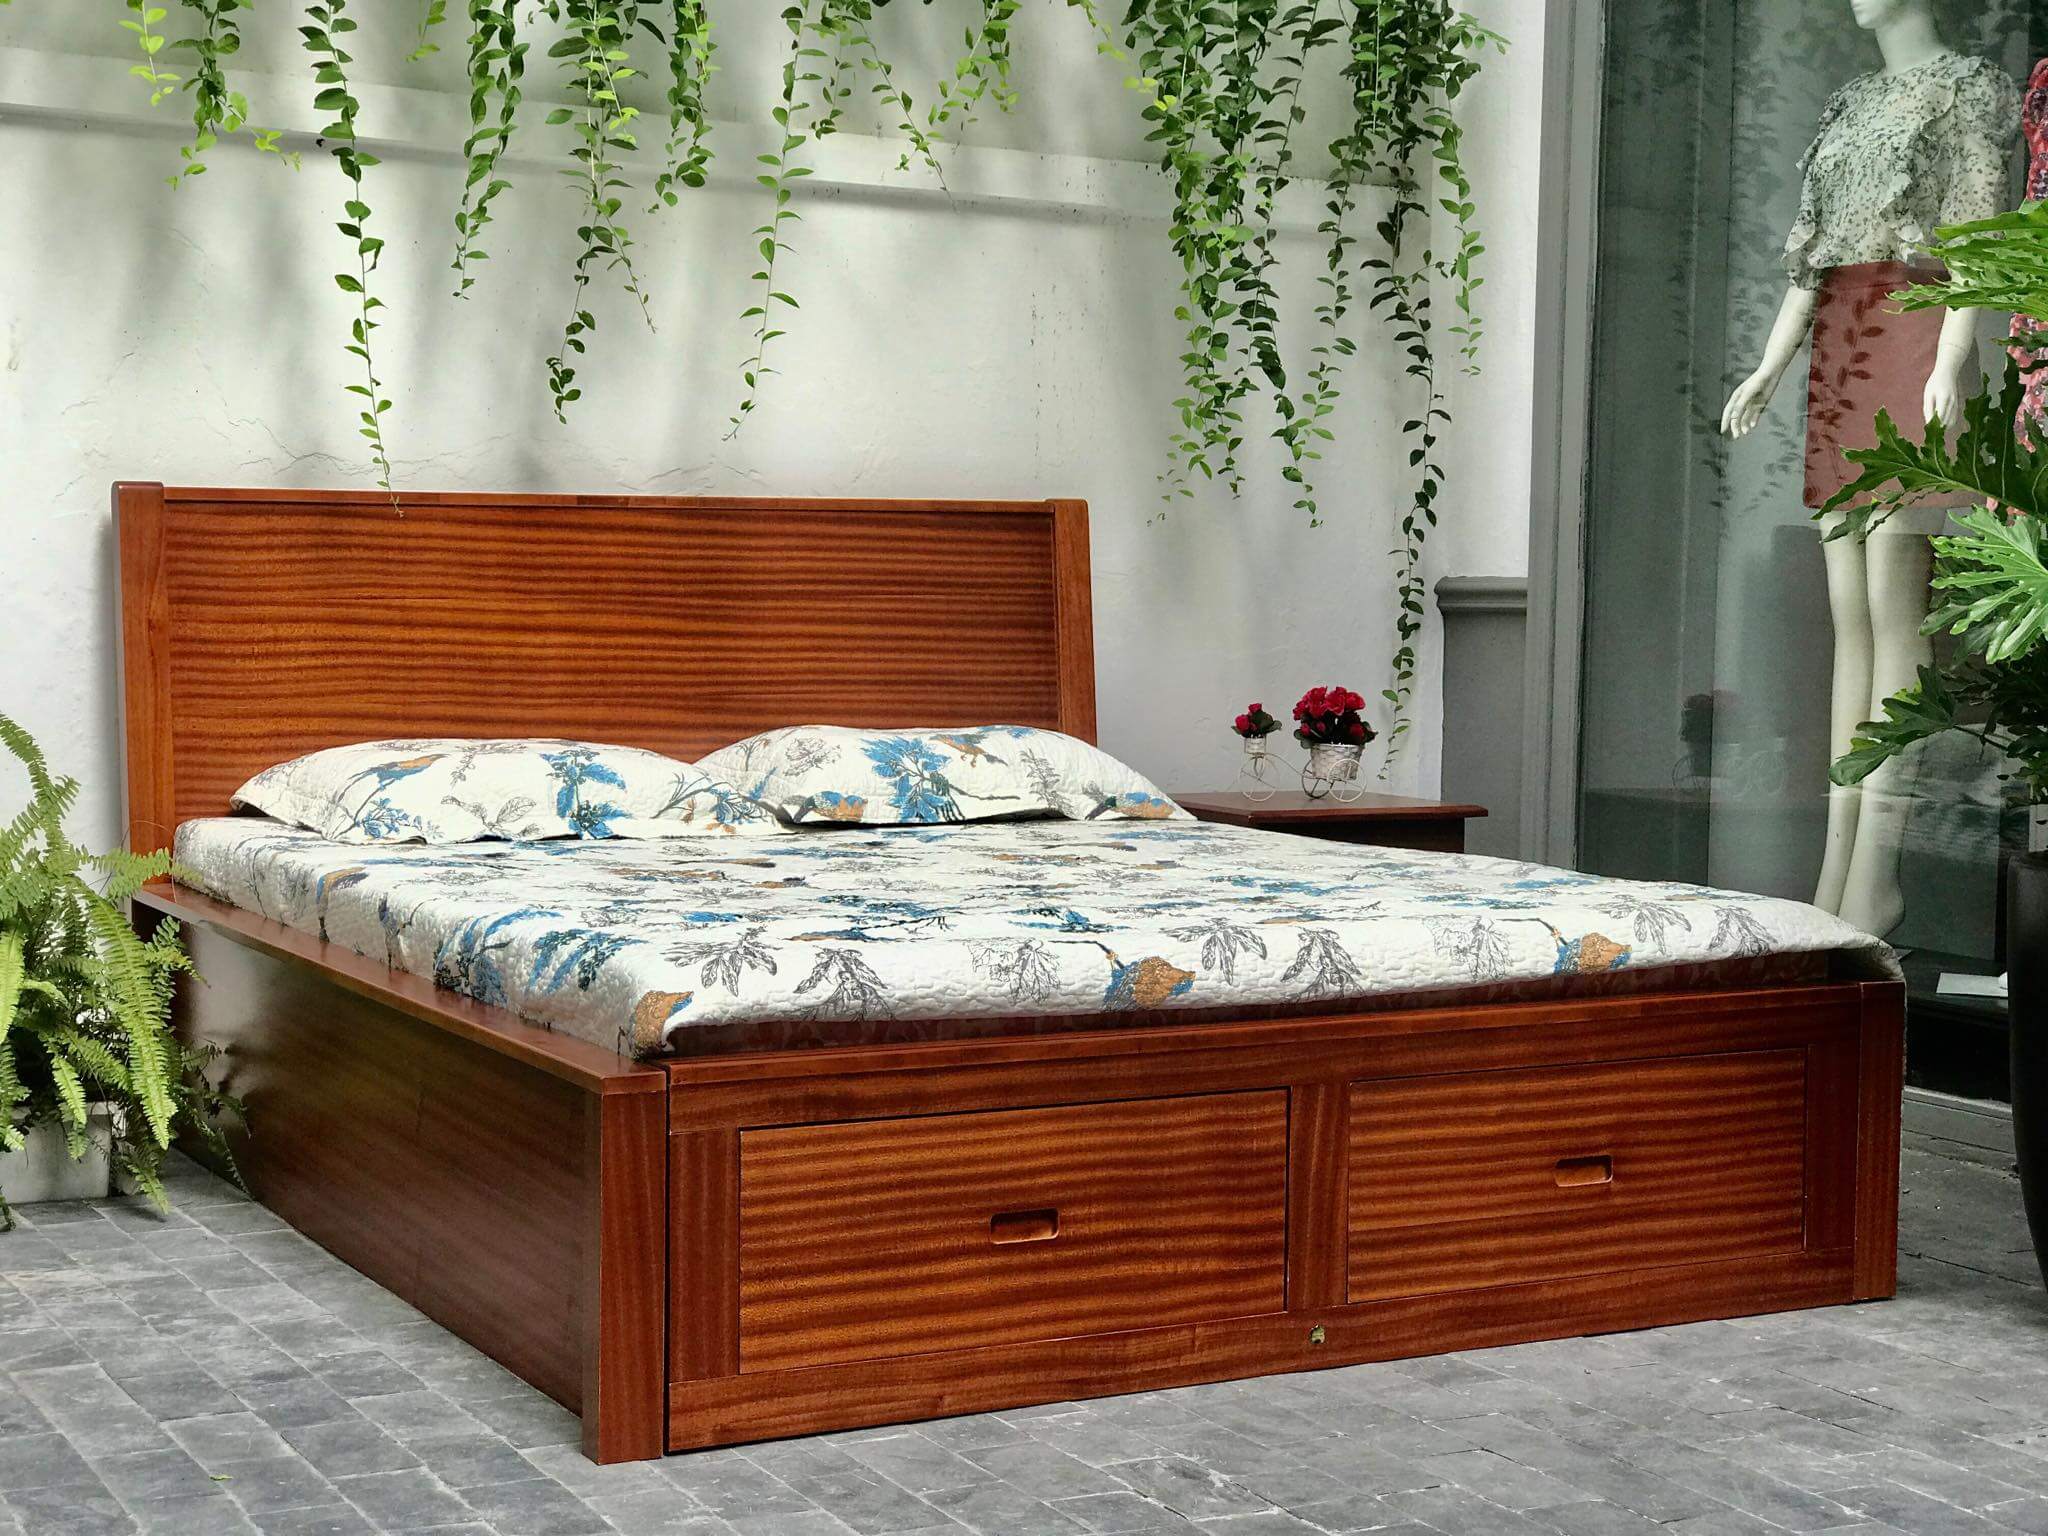 Mẫu giường gỗ của Hoàng Anh Gia Lai